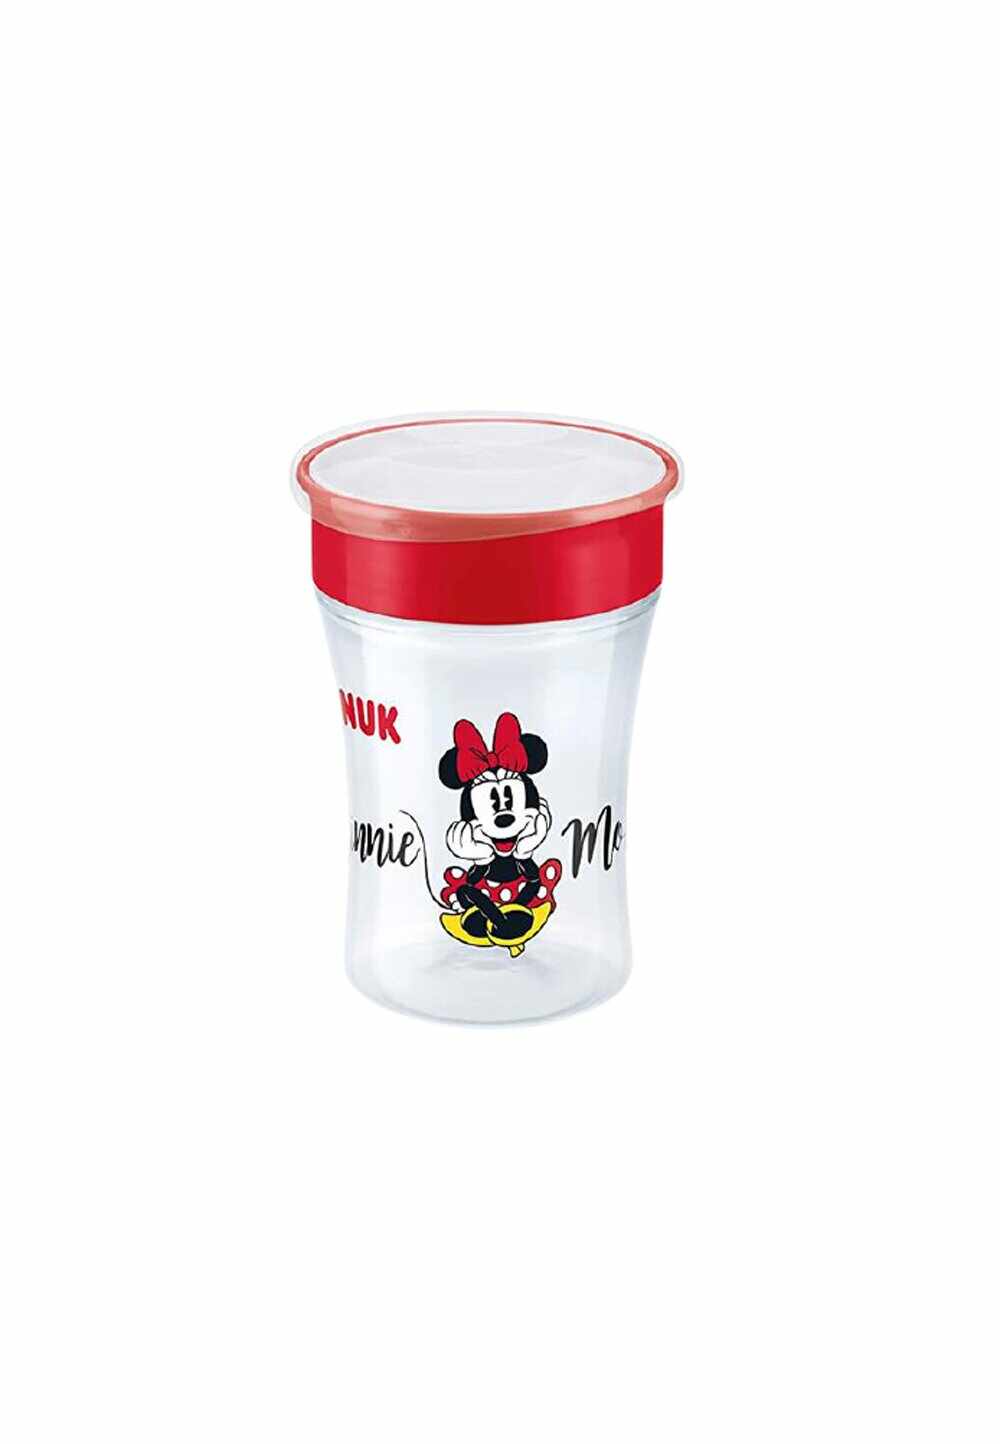 Cana de baut, Magic cup, Minnie Mouse, rosie, +8 luni, 230 ml